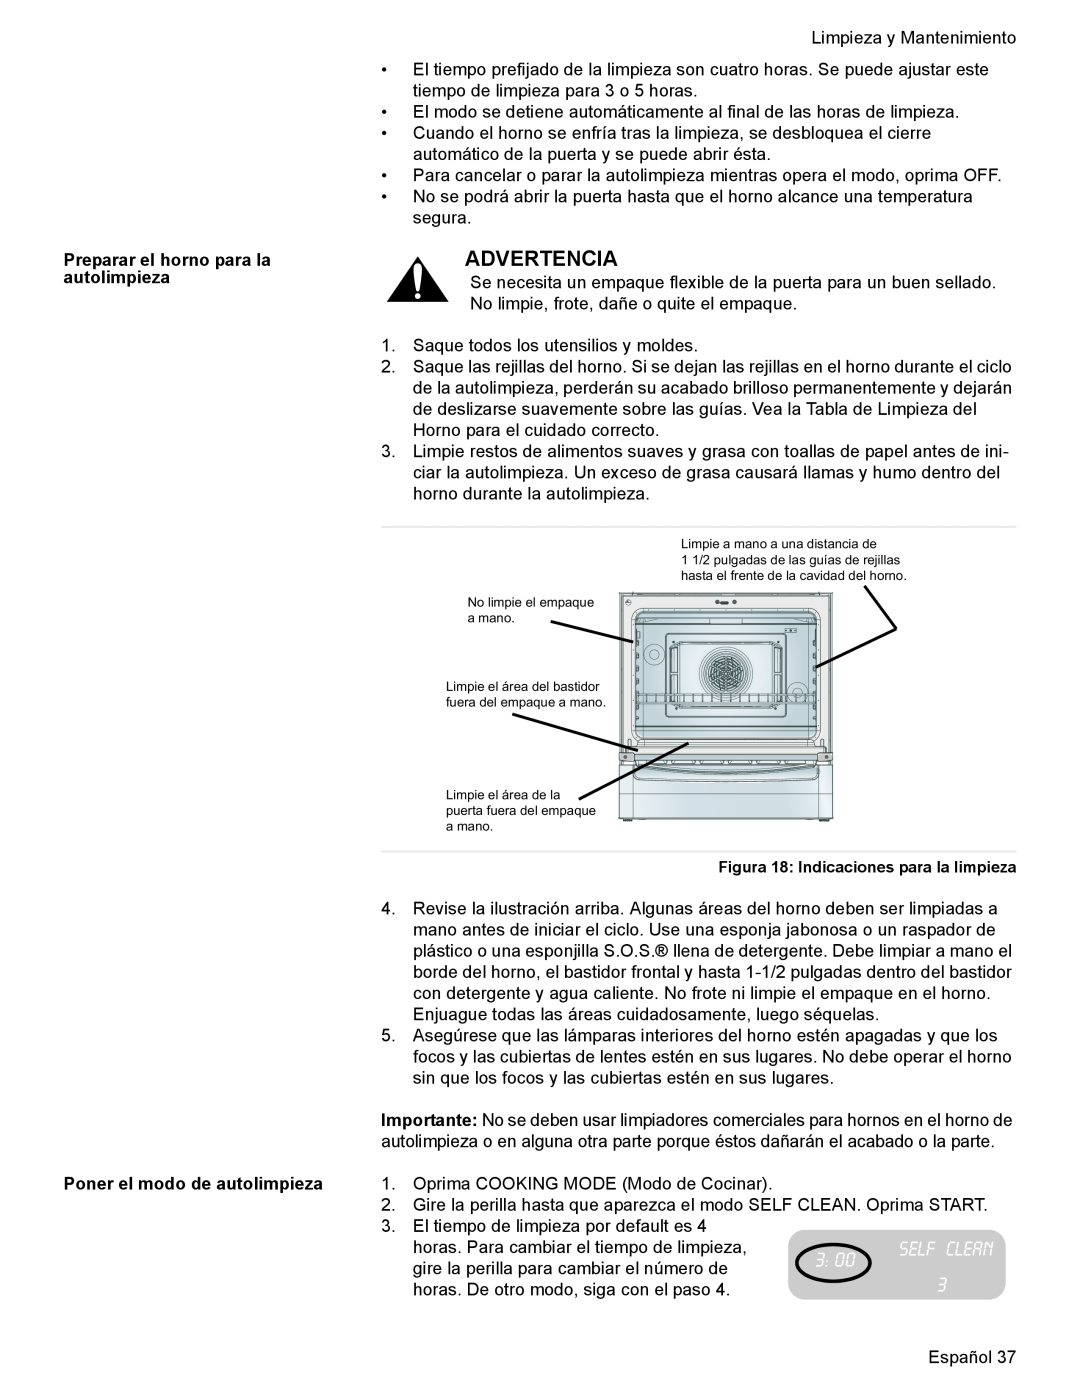 Bosch Appliances HES7282U manual Advertencia, Preparar el horno para la autolimpieza Poner el modo de autolimpieza 